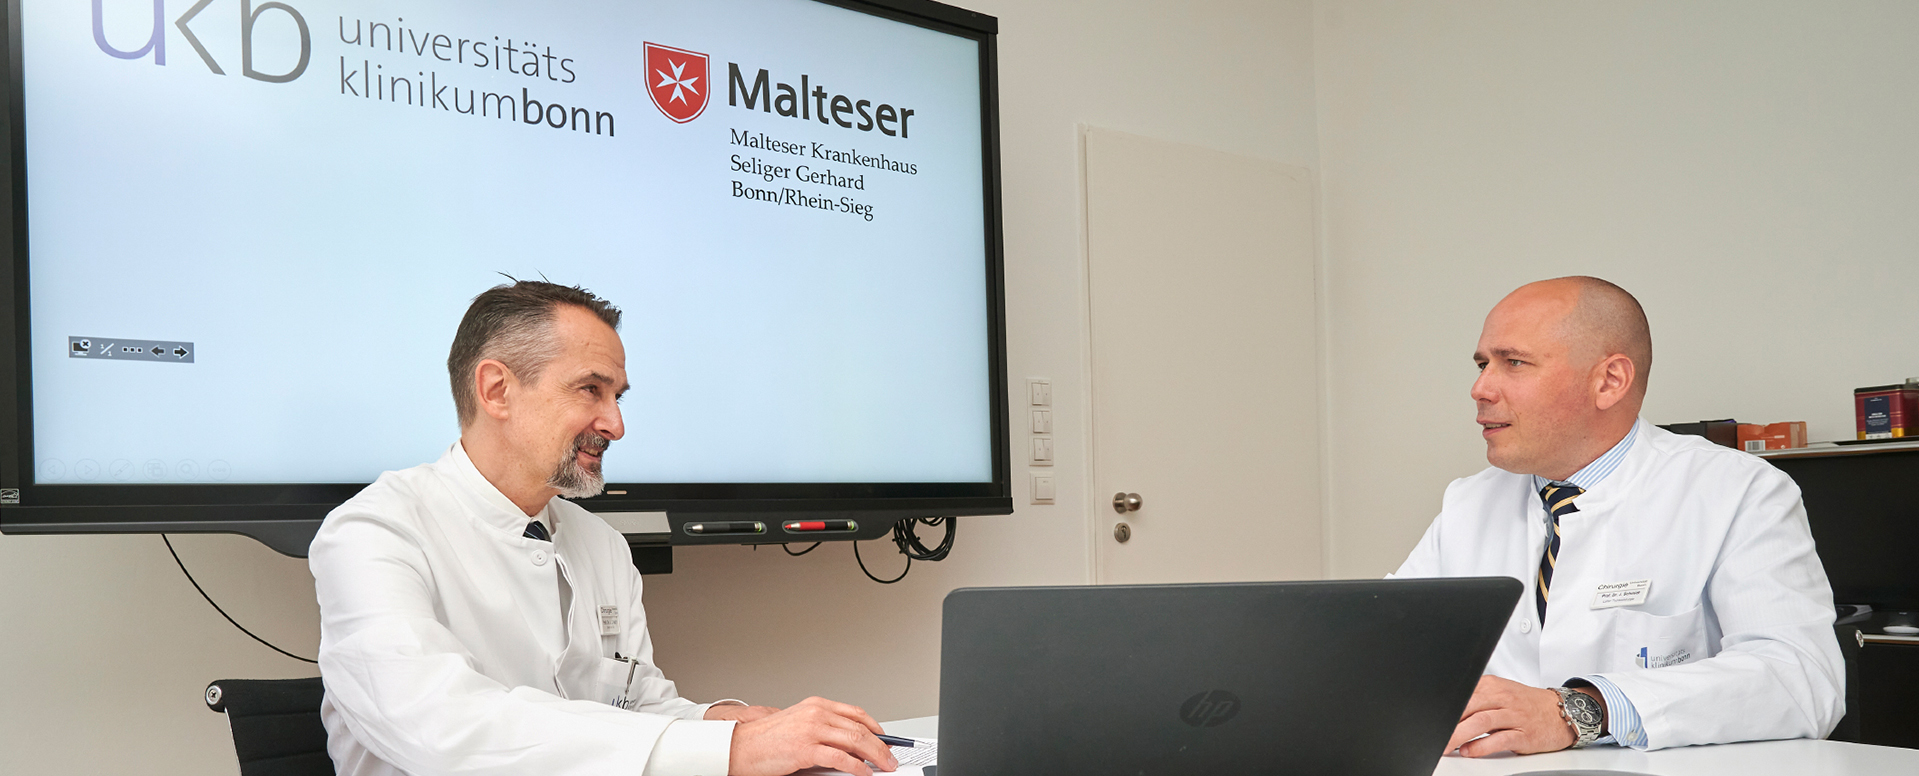 Thoraxchirurgie aus einer Hand – Universitätsklinikum Bonn und Malteser Krankenhaus arbeiten in Wissenschaft, Lehre und Patientenversorgung zusammen